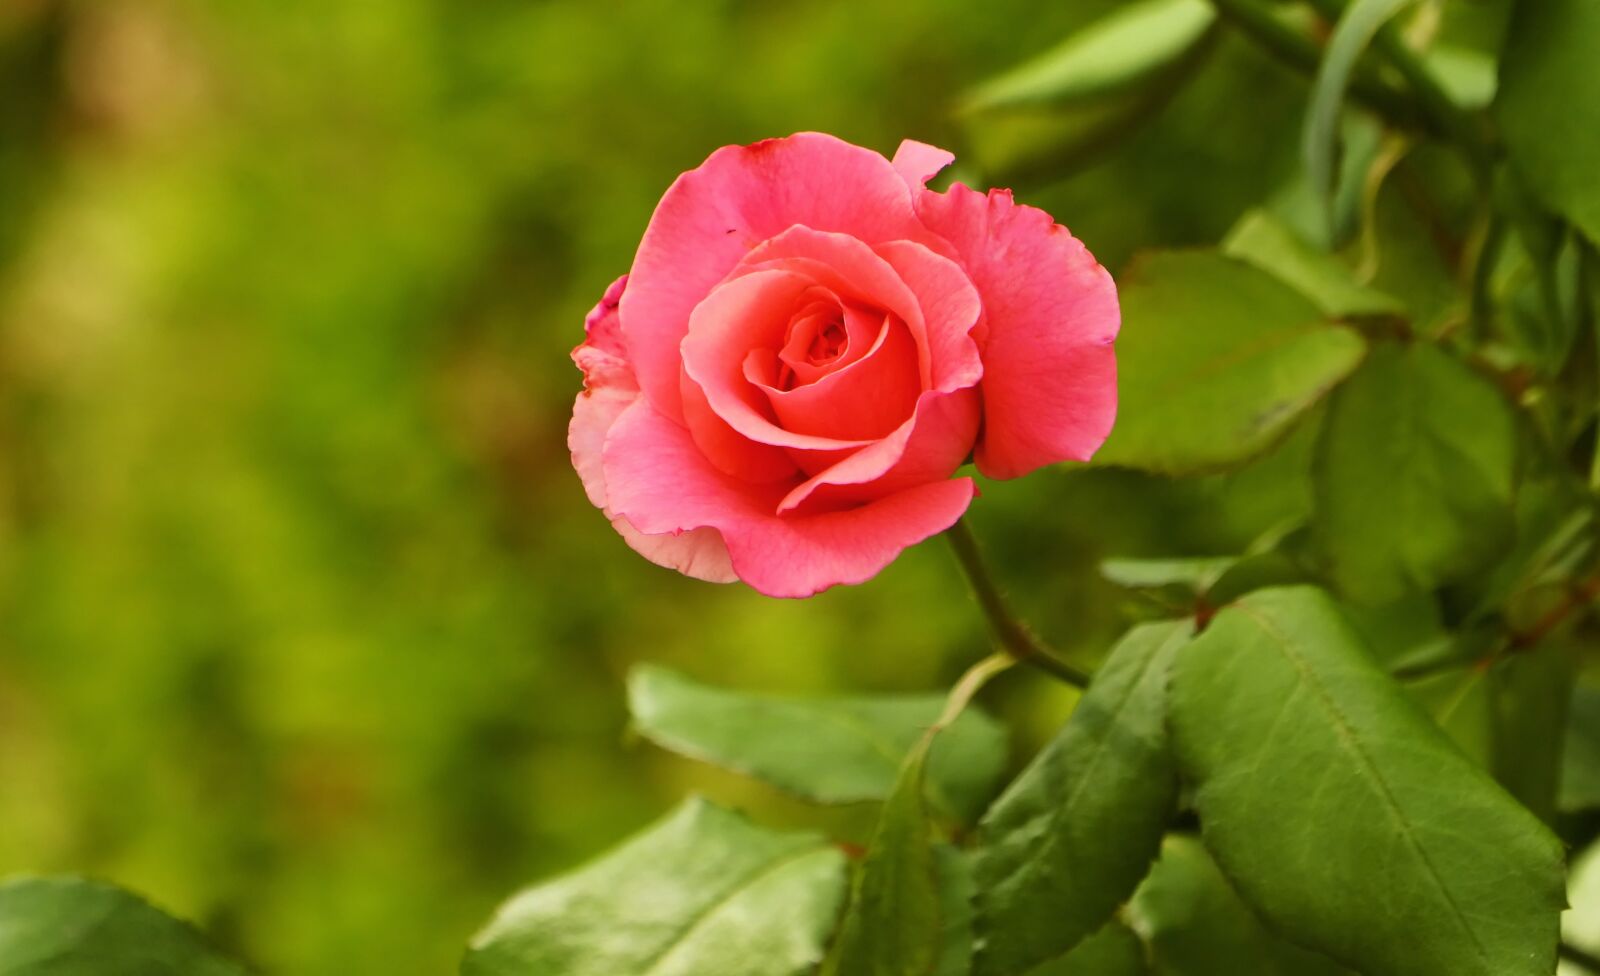 Canon EOS M5 sample photo. Rose, summer, garden photography